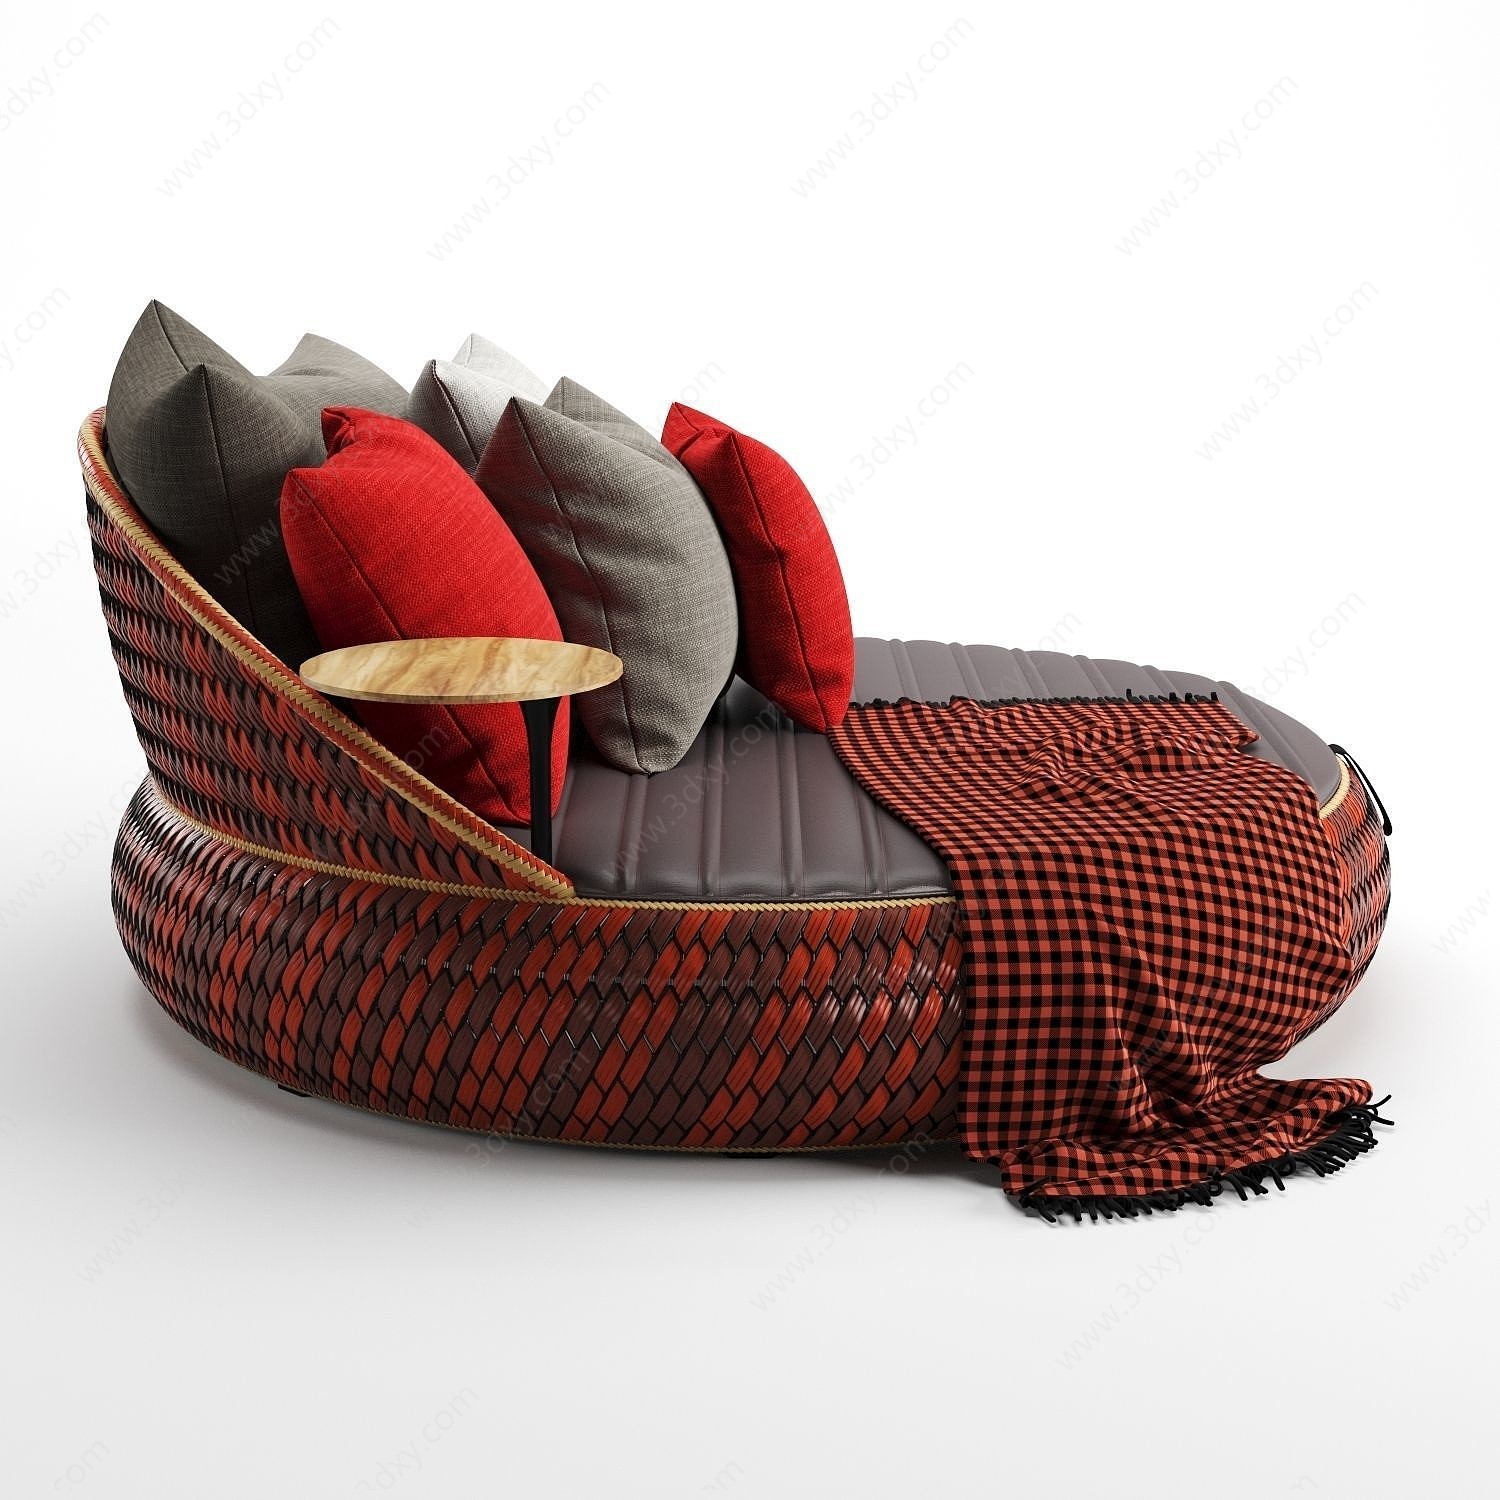 意大利圆形休闲沙发3D模型